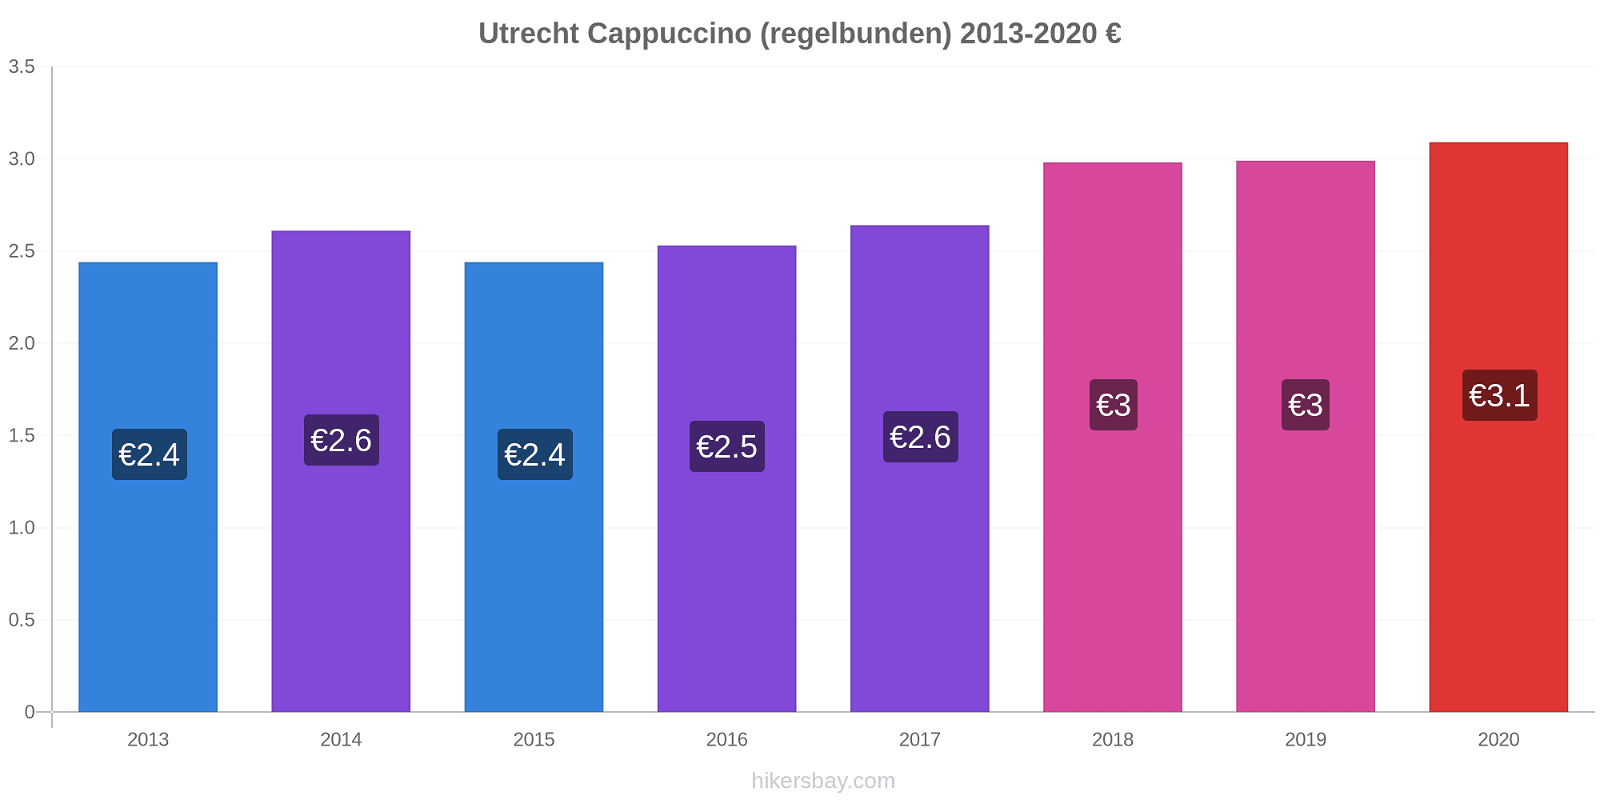 Utrecht prisförändringar Cappuccino (regelbunden) hikersbay.com